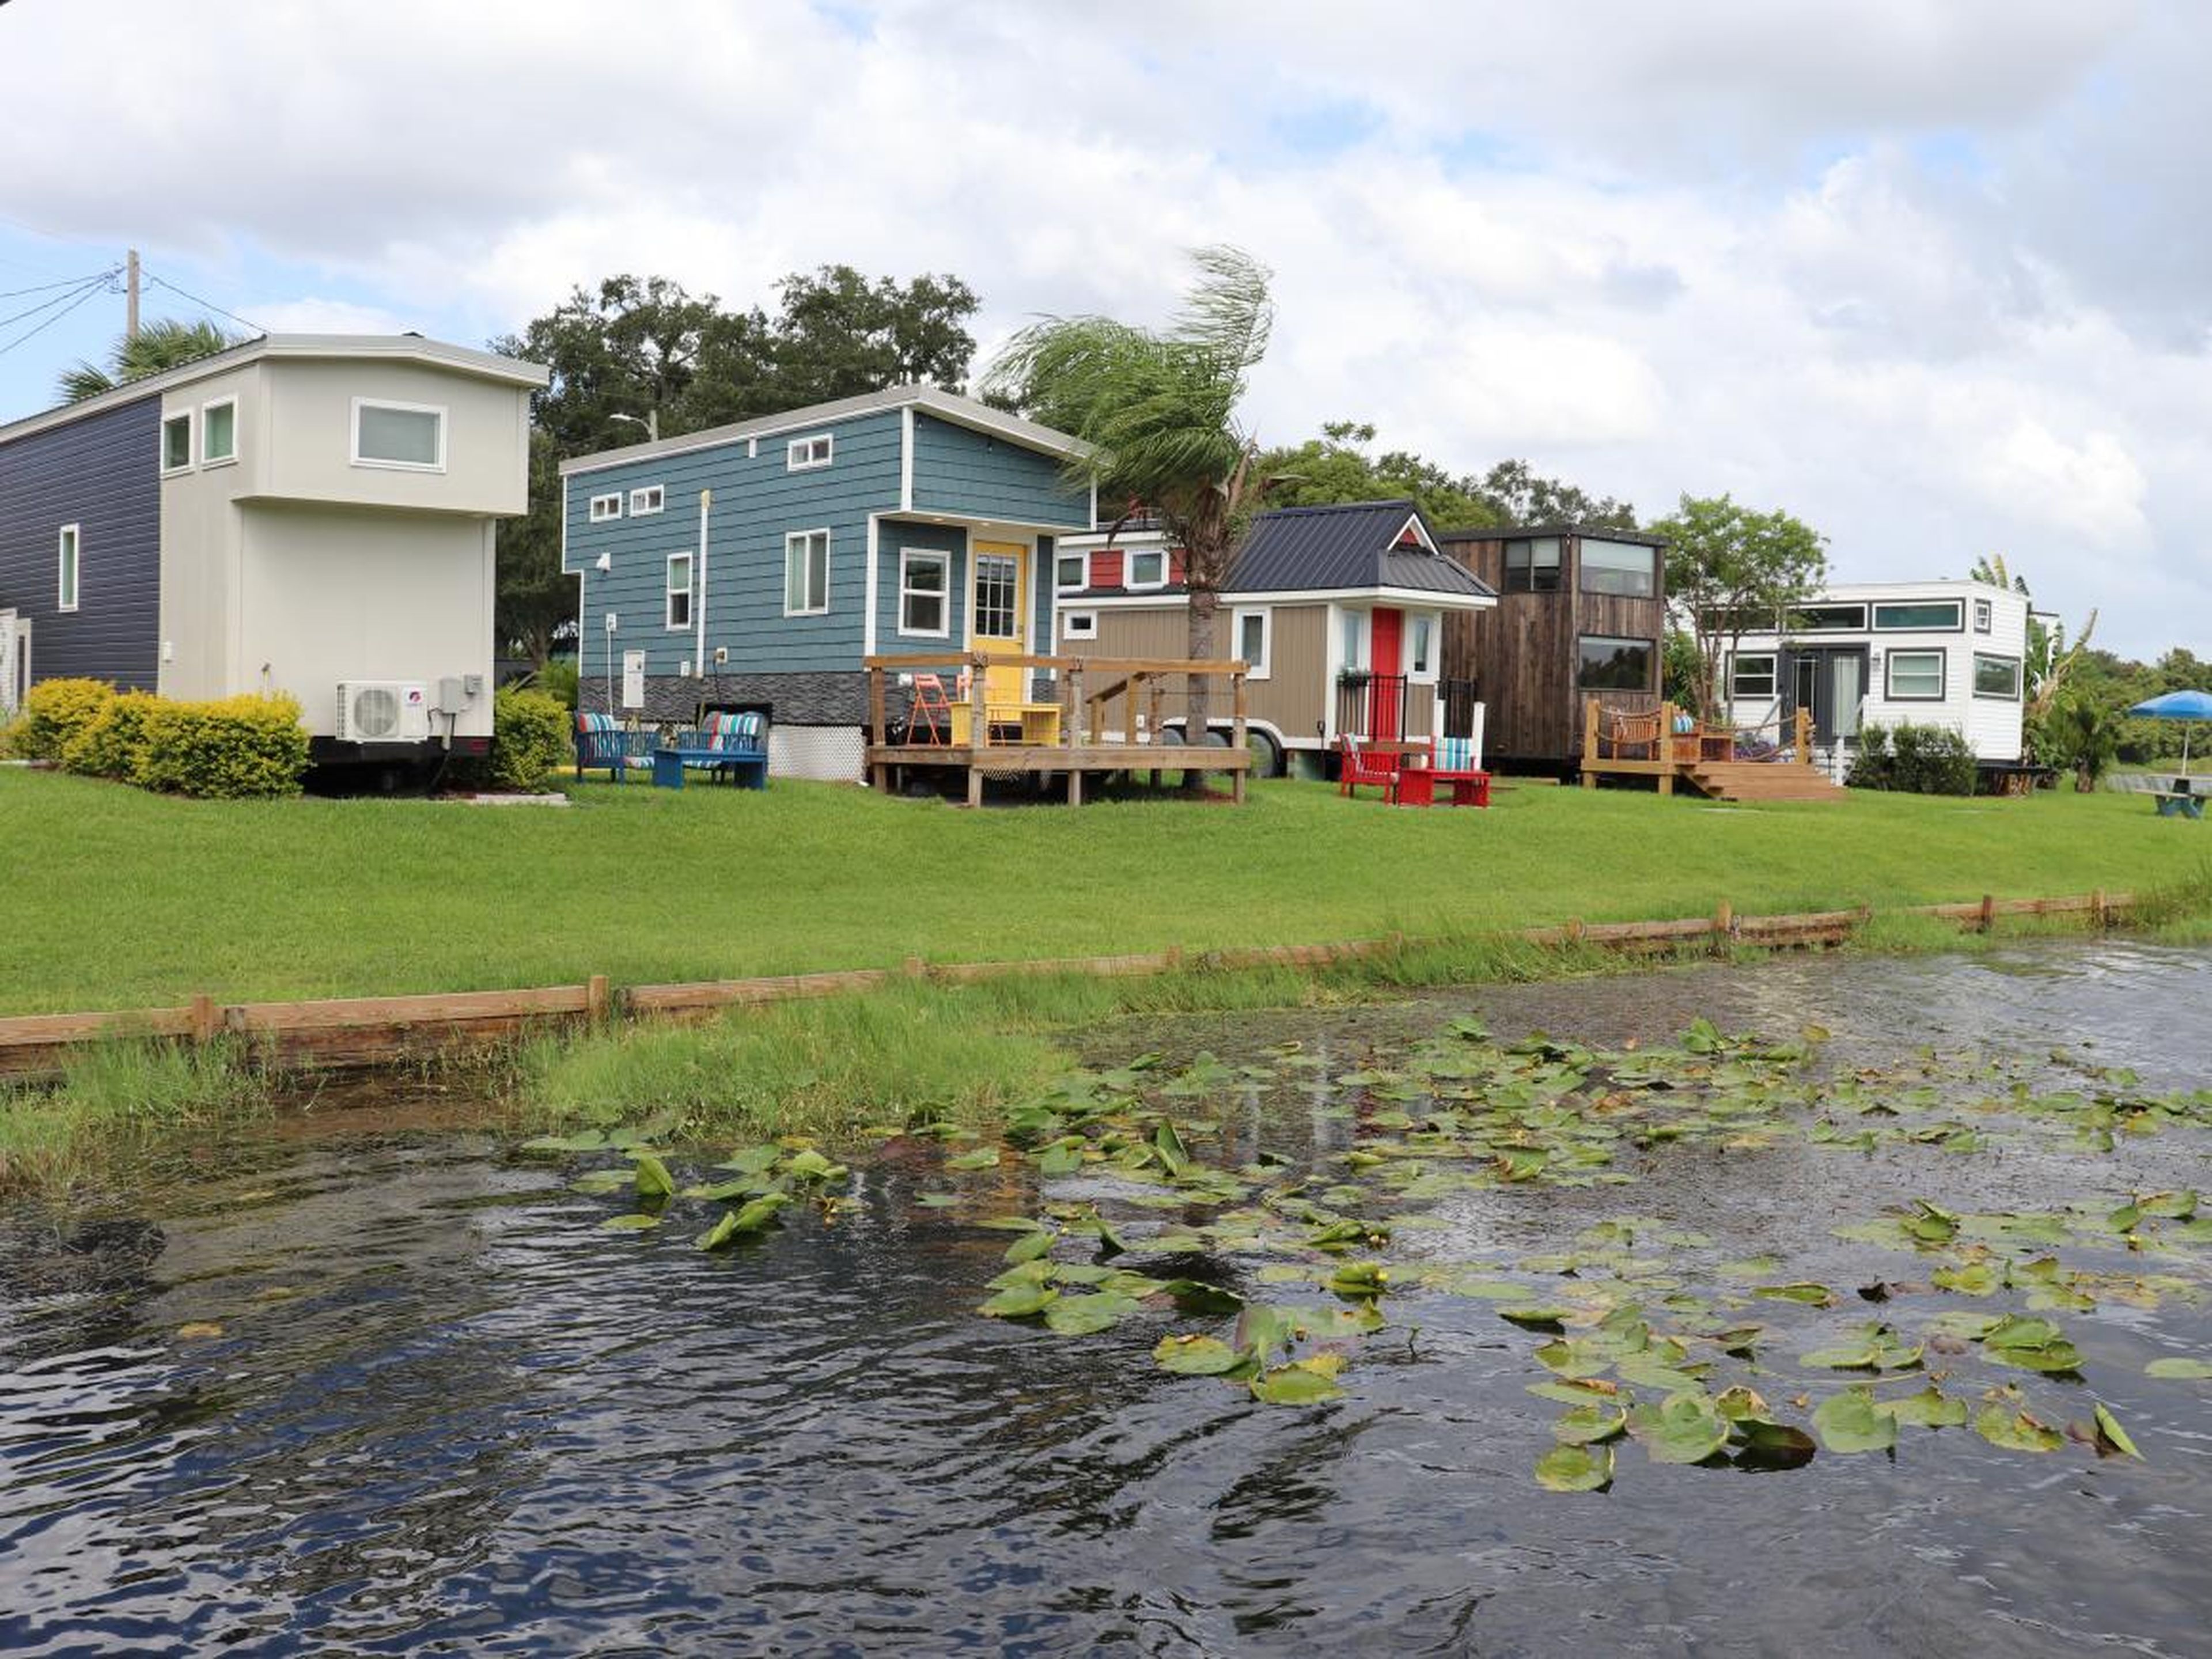 La comunidad de Orlando Lakefront tiene más de 30 casas pequeñas.